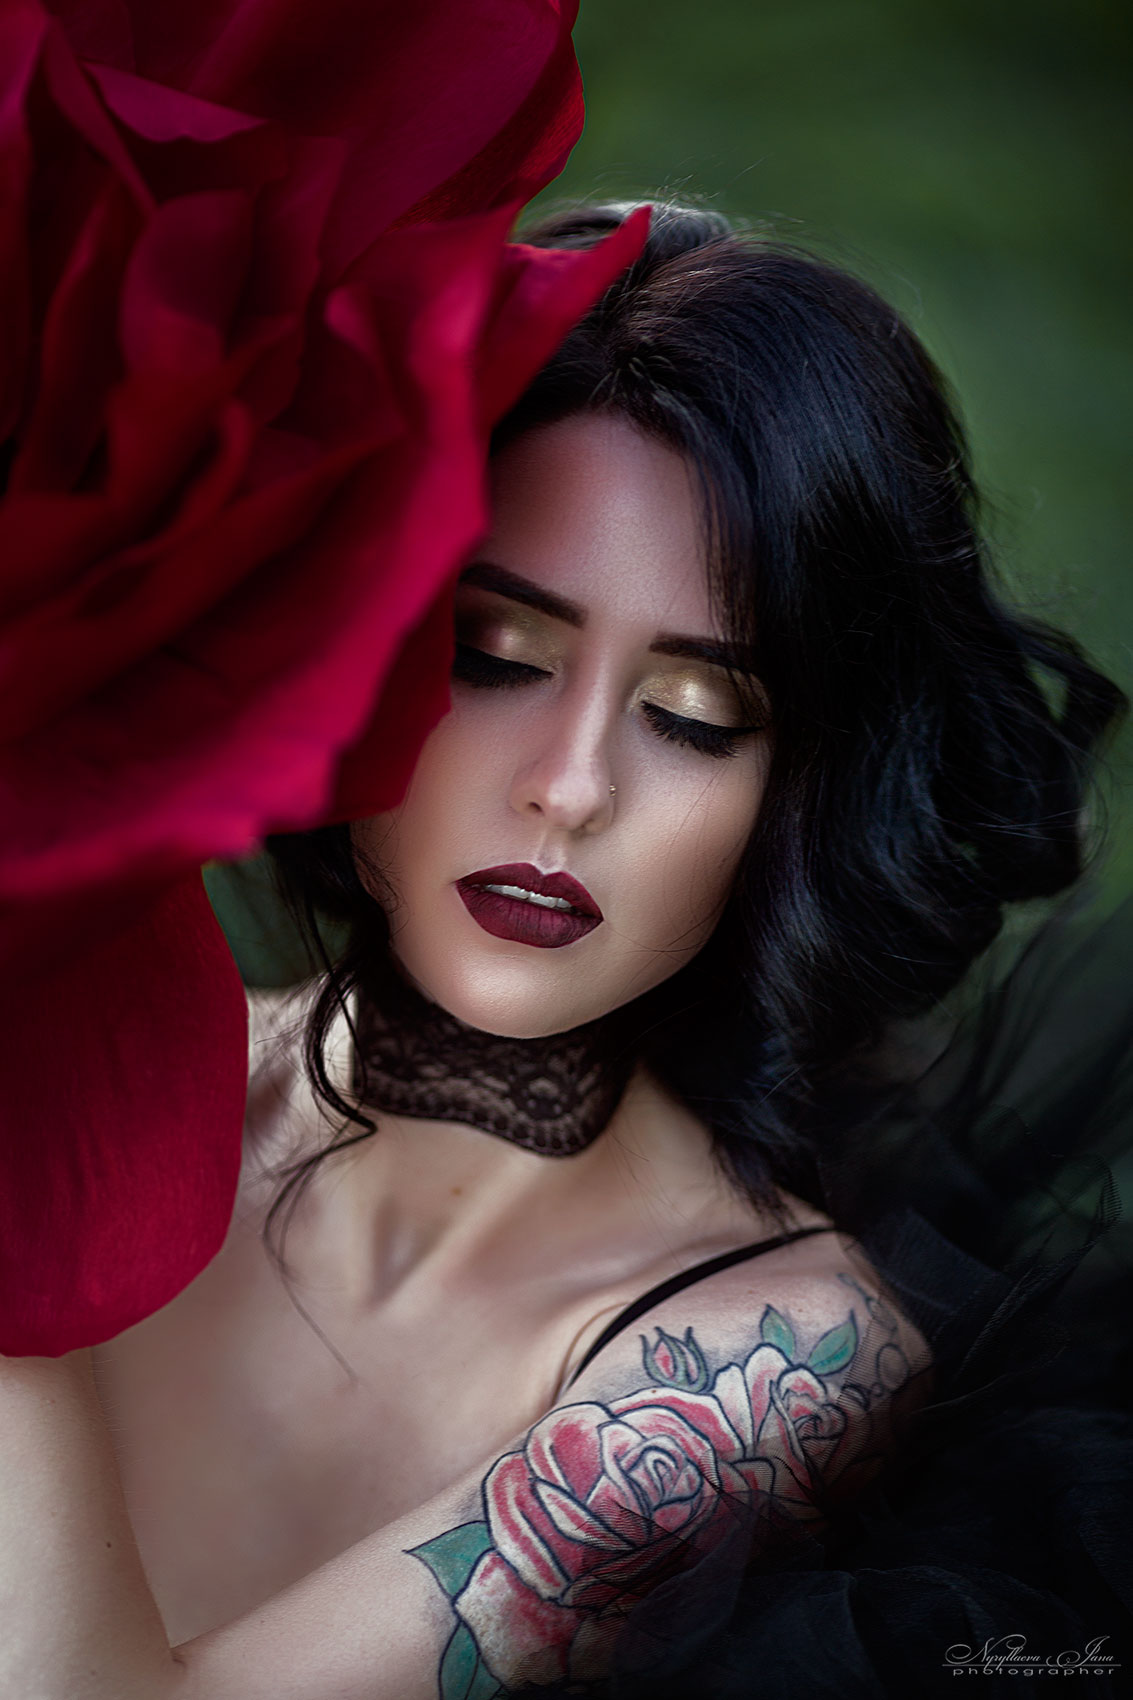 Фото Девушка с бордовой розой, фотограф Нуруллаева Яночка